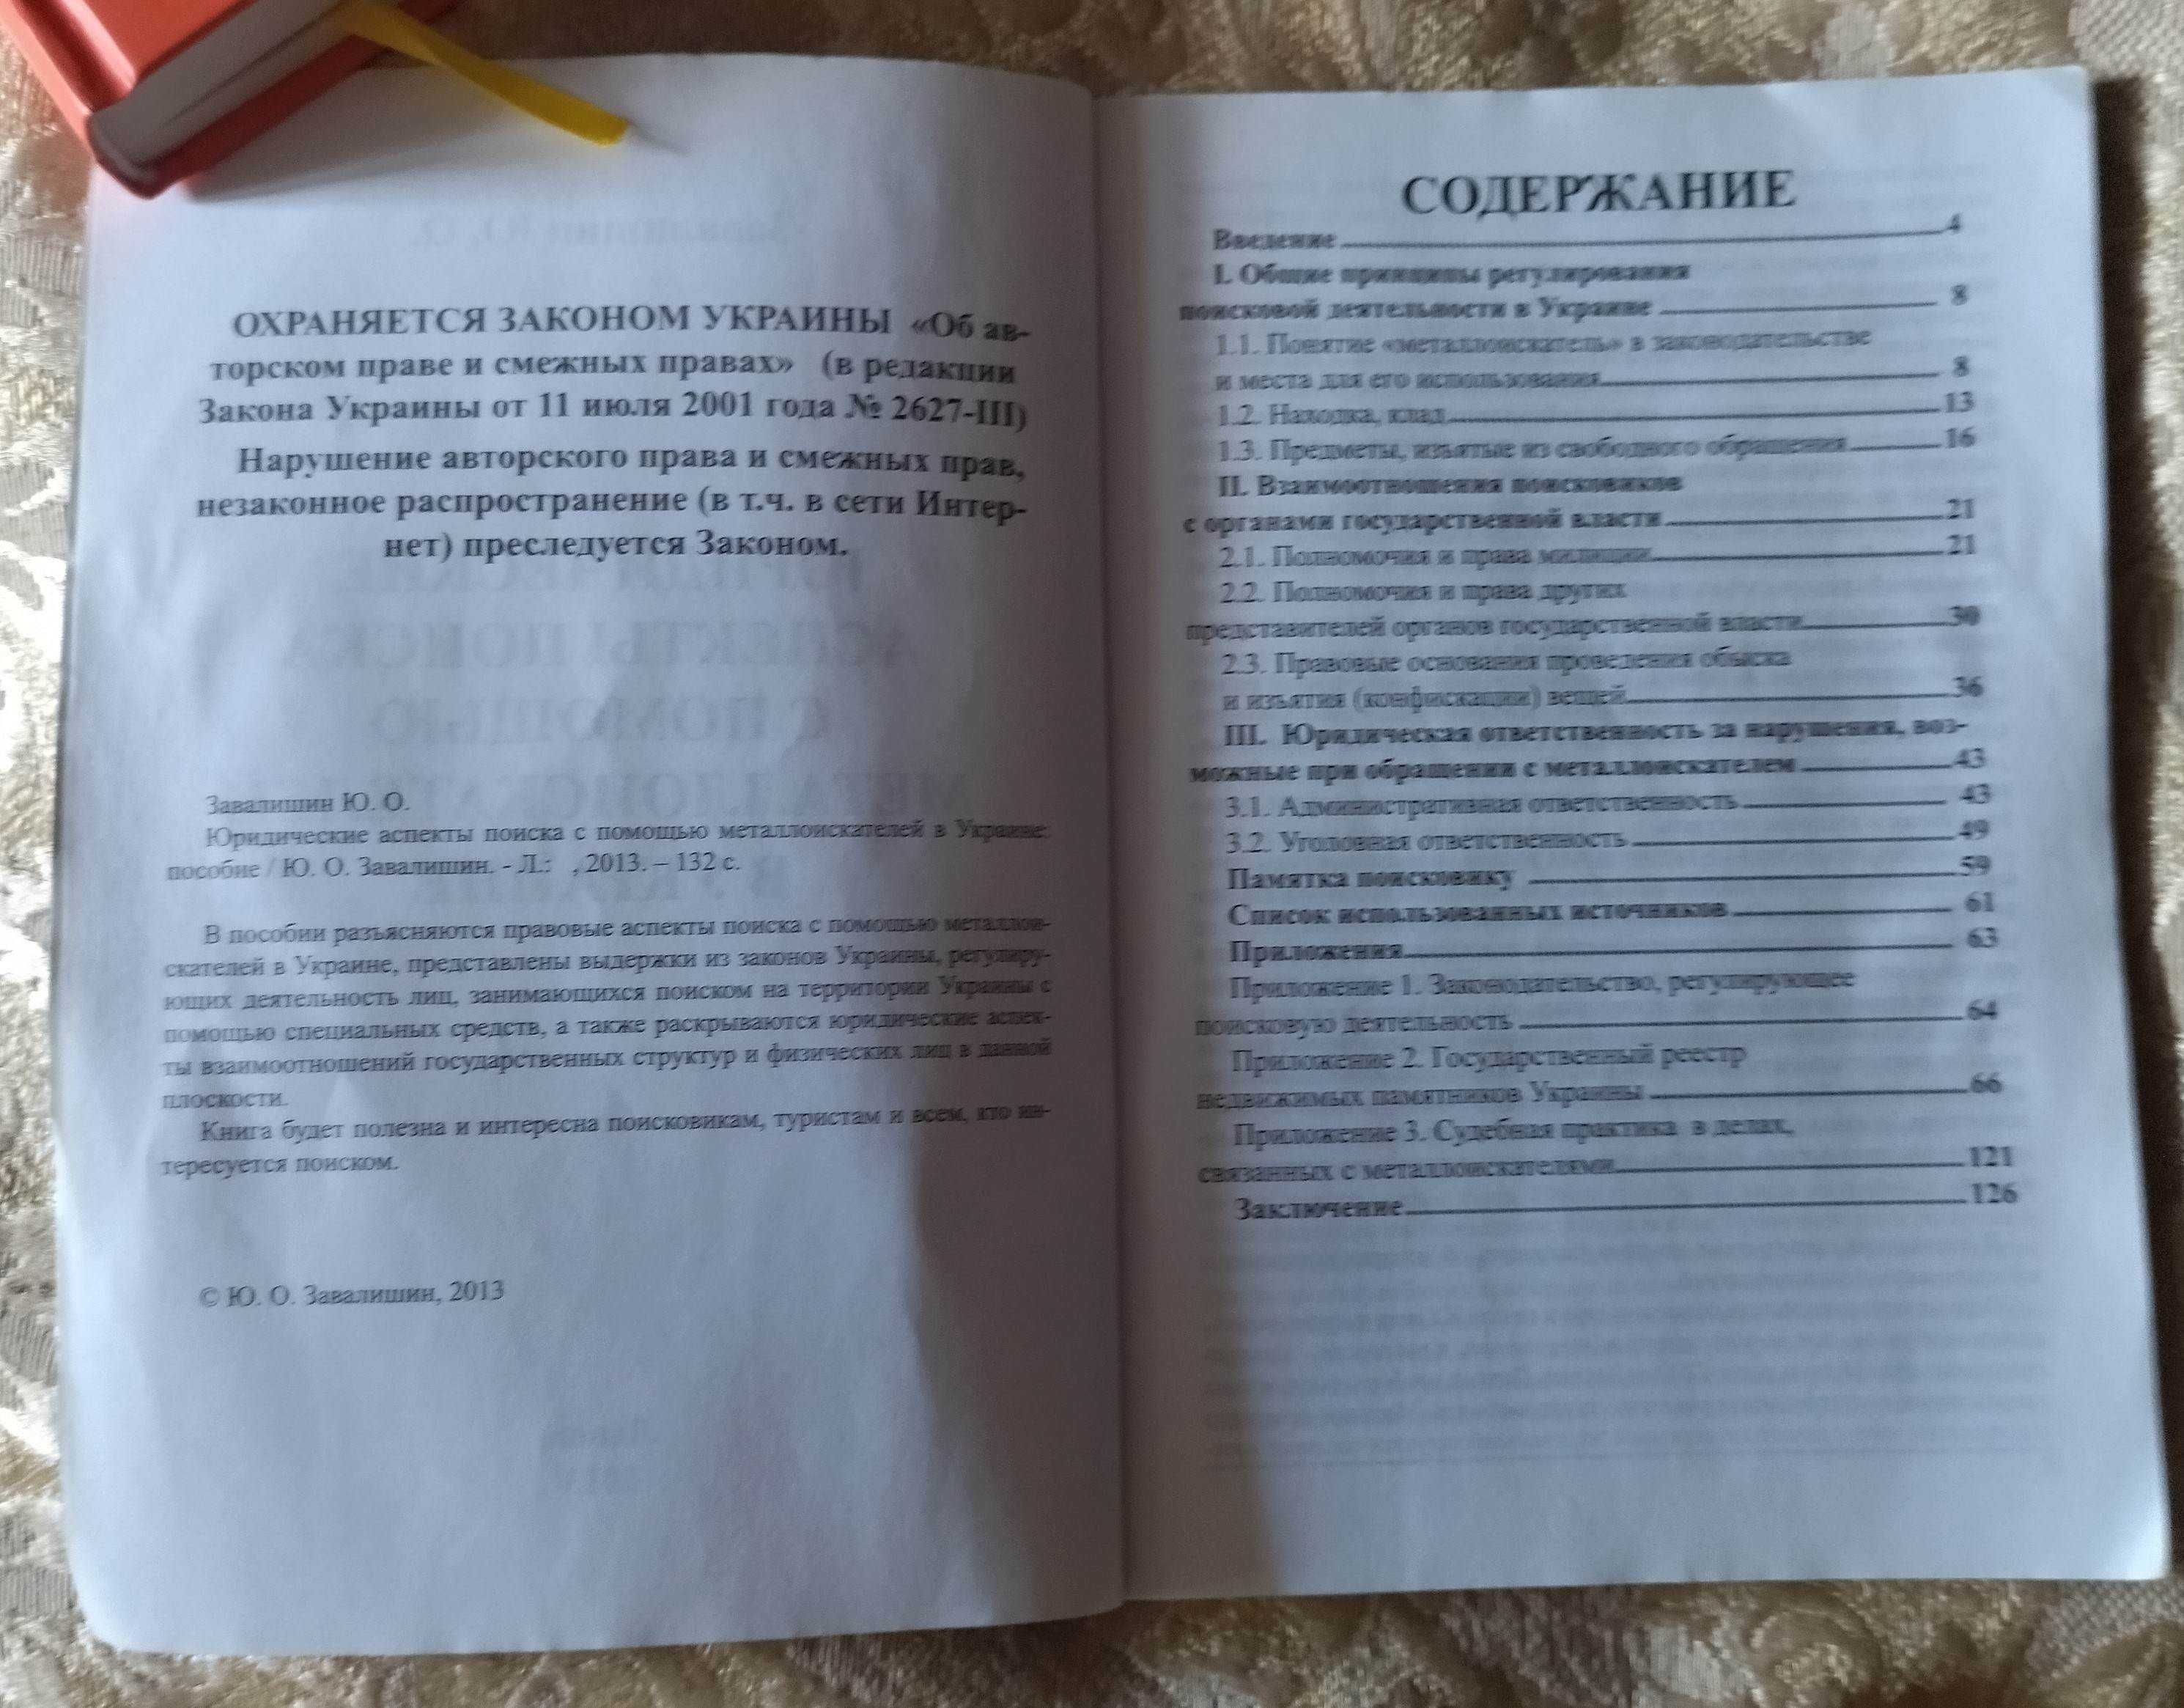 Книга "Юридические аспекты поиска с помощью металлоискателя в Украине"